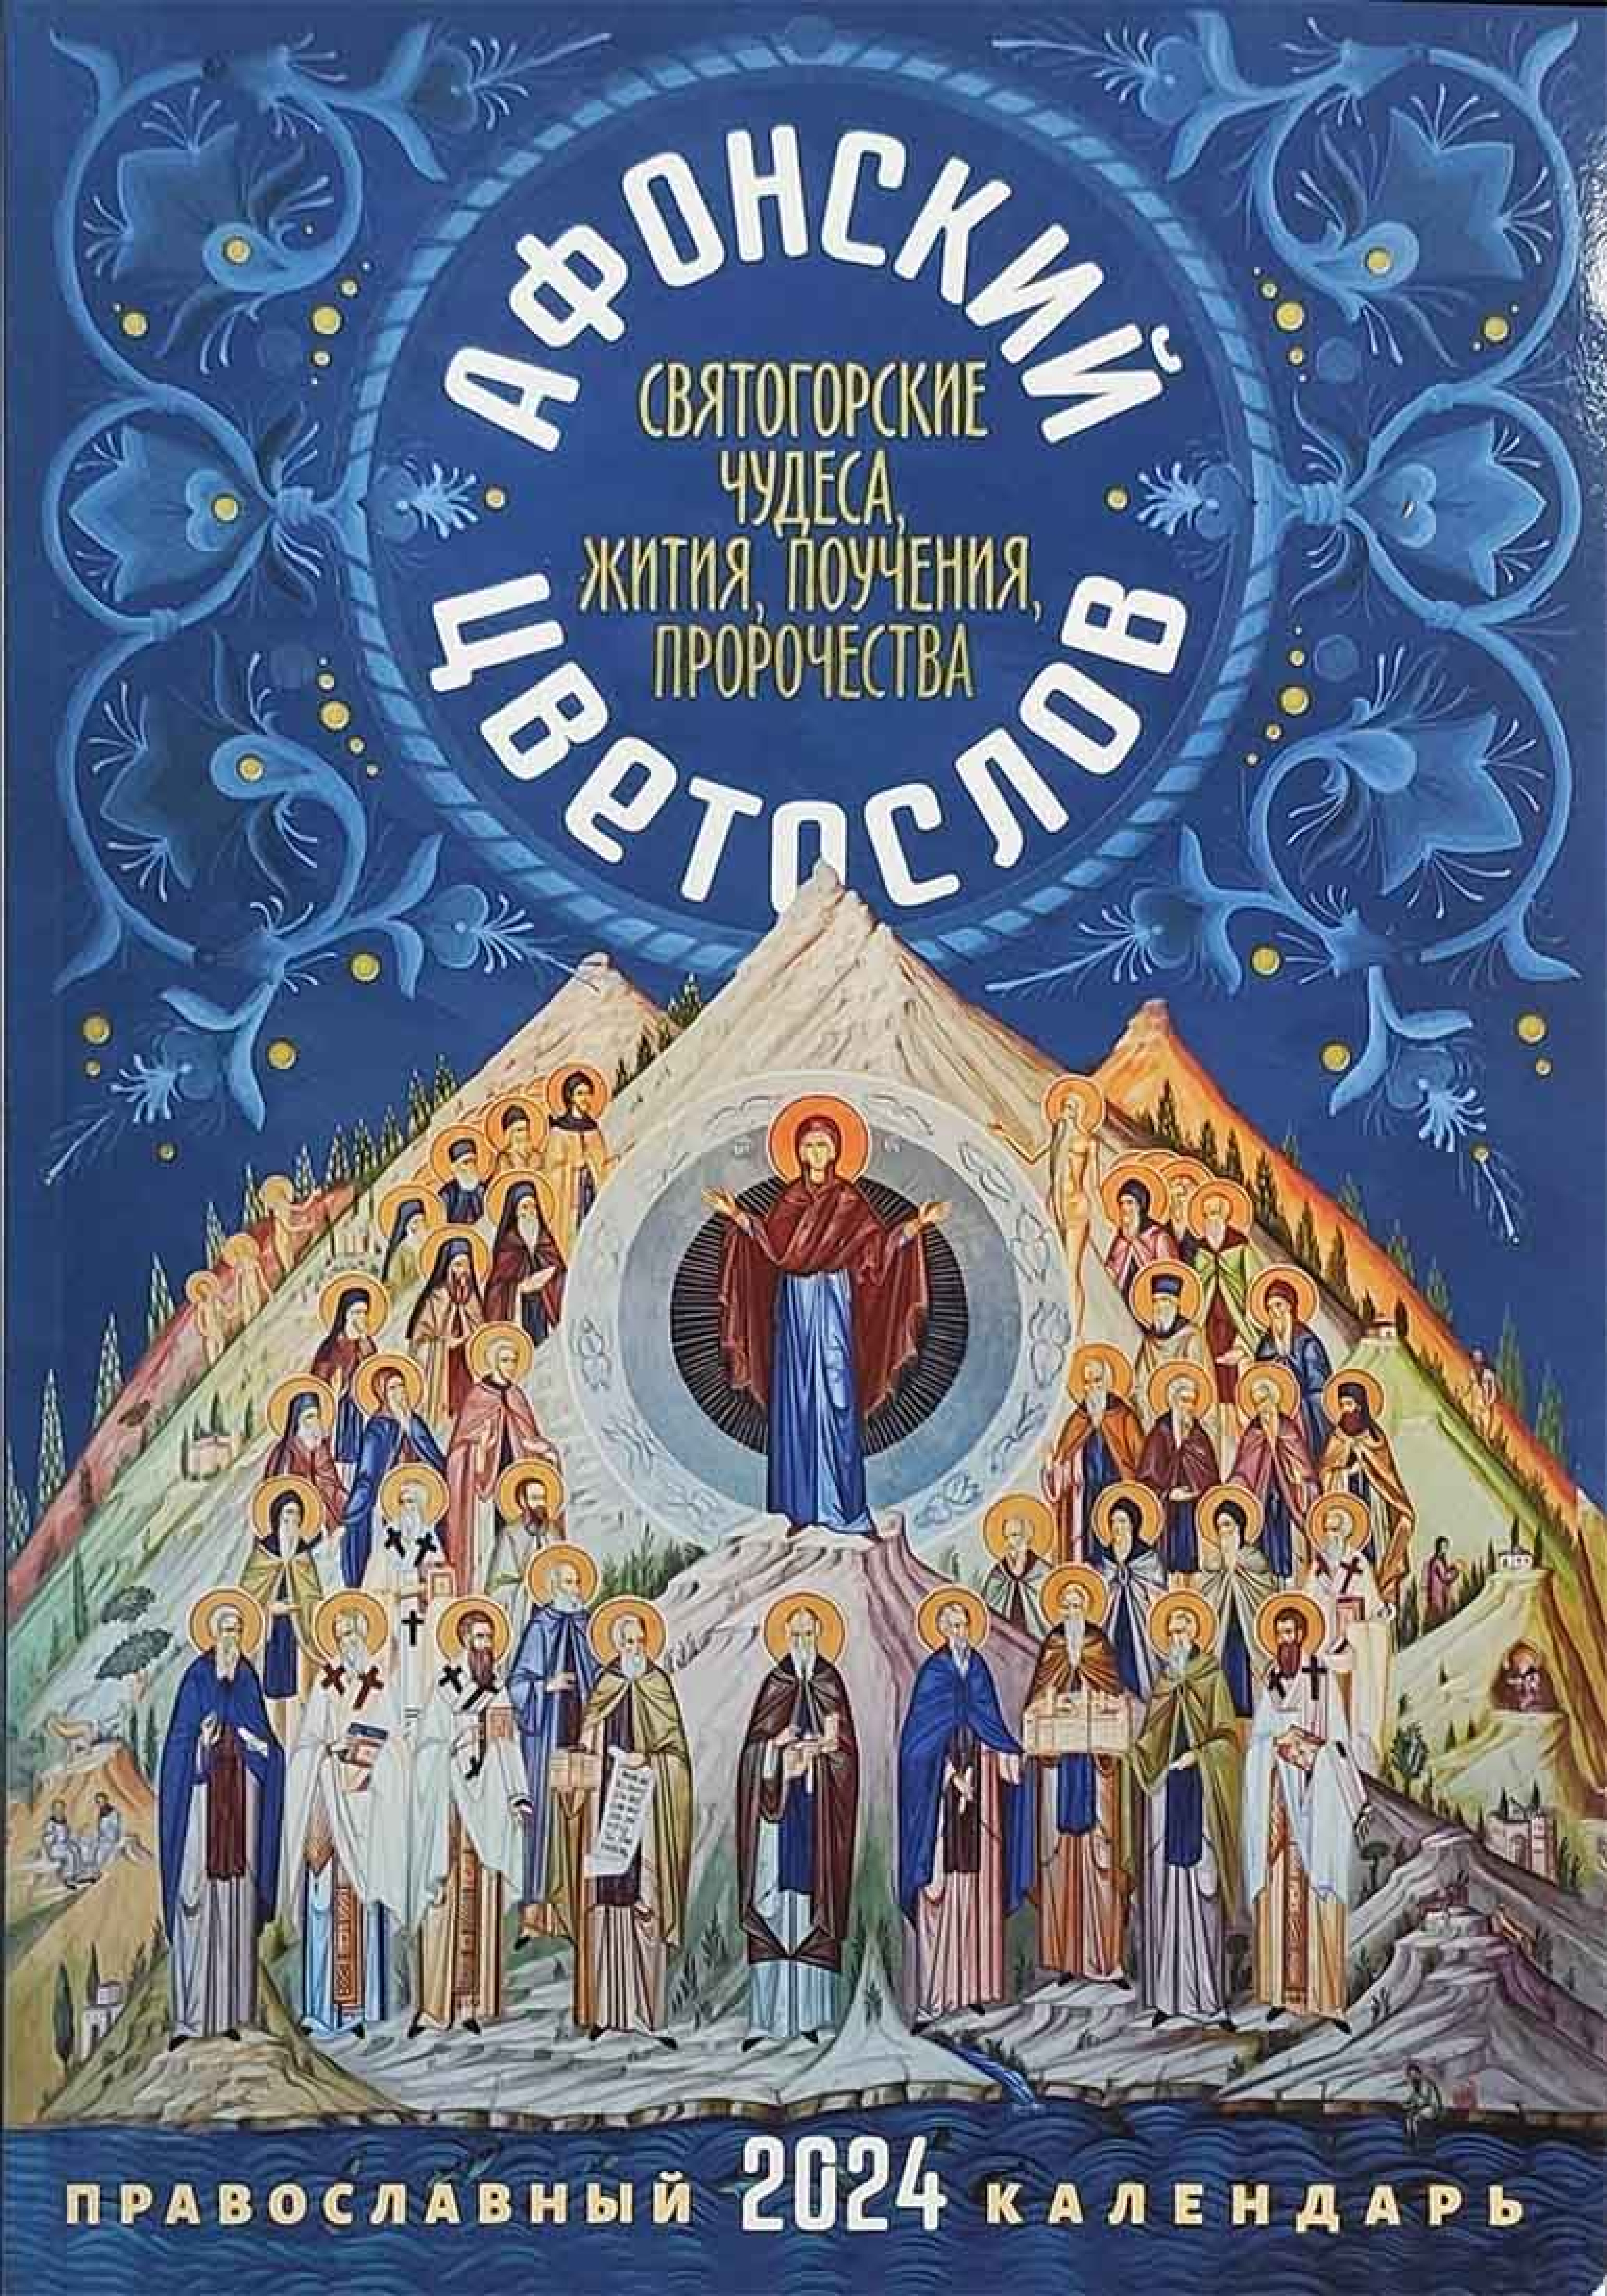 Календрь православный на 2024 год. Афонский цветослов